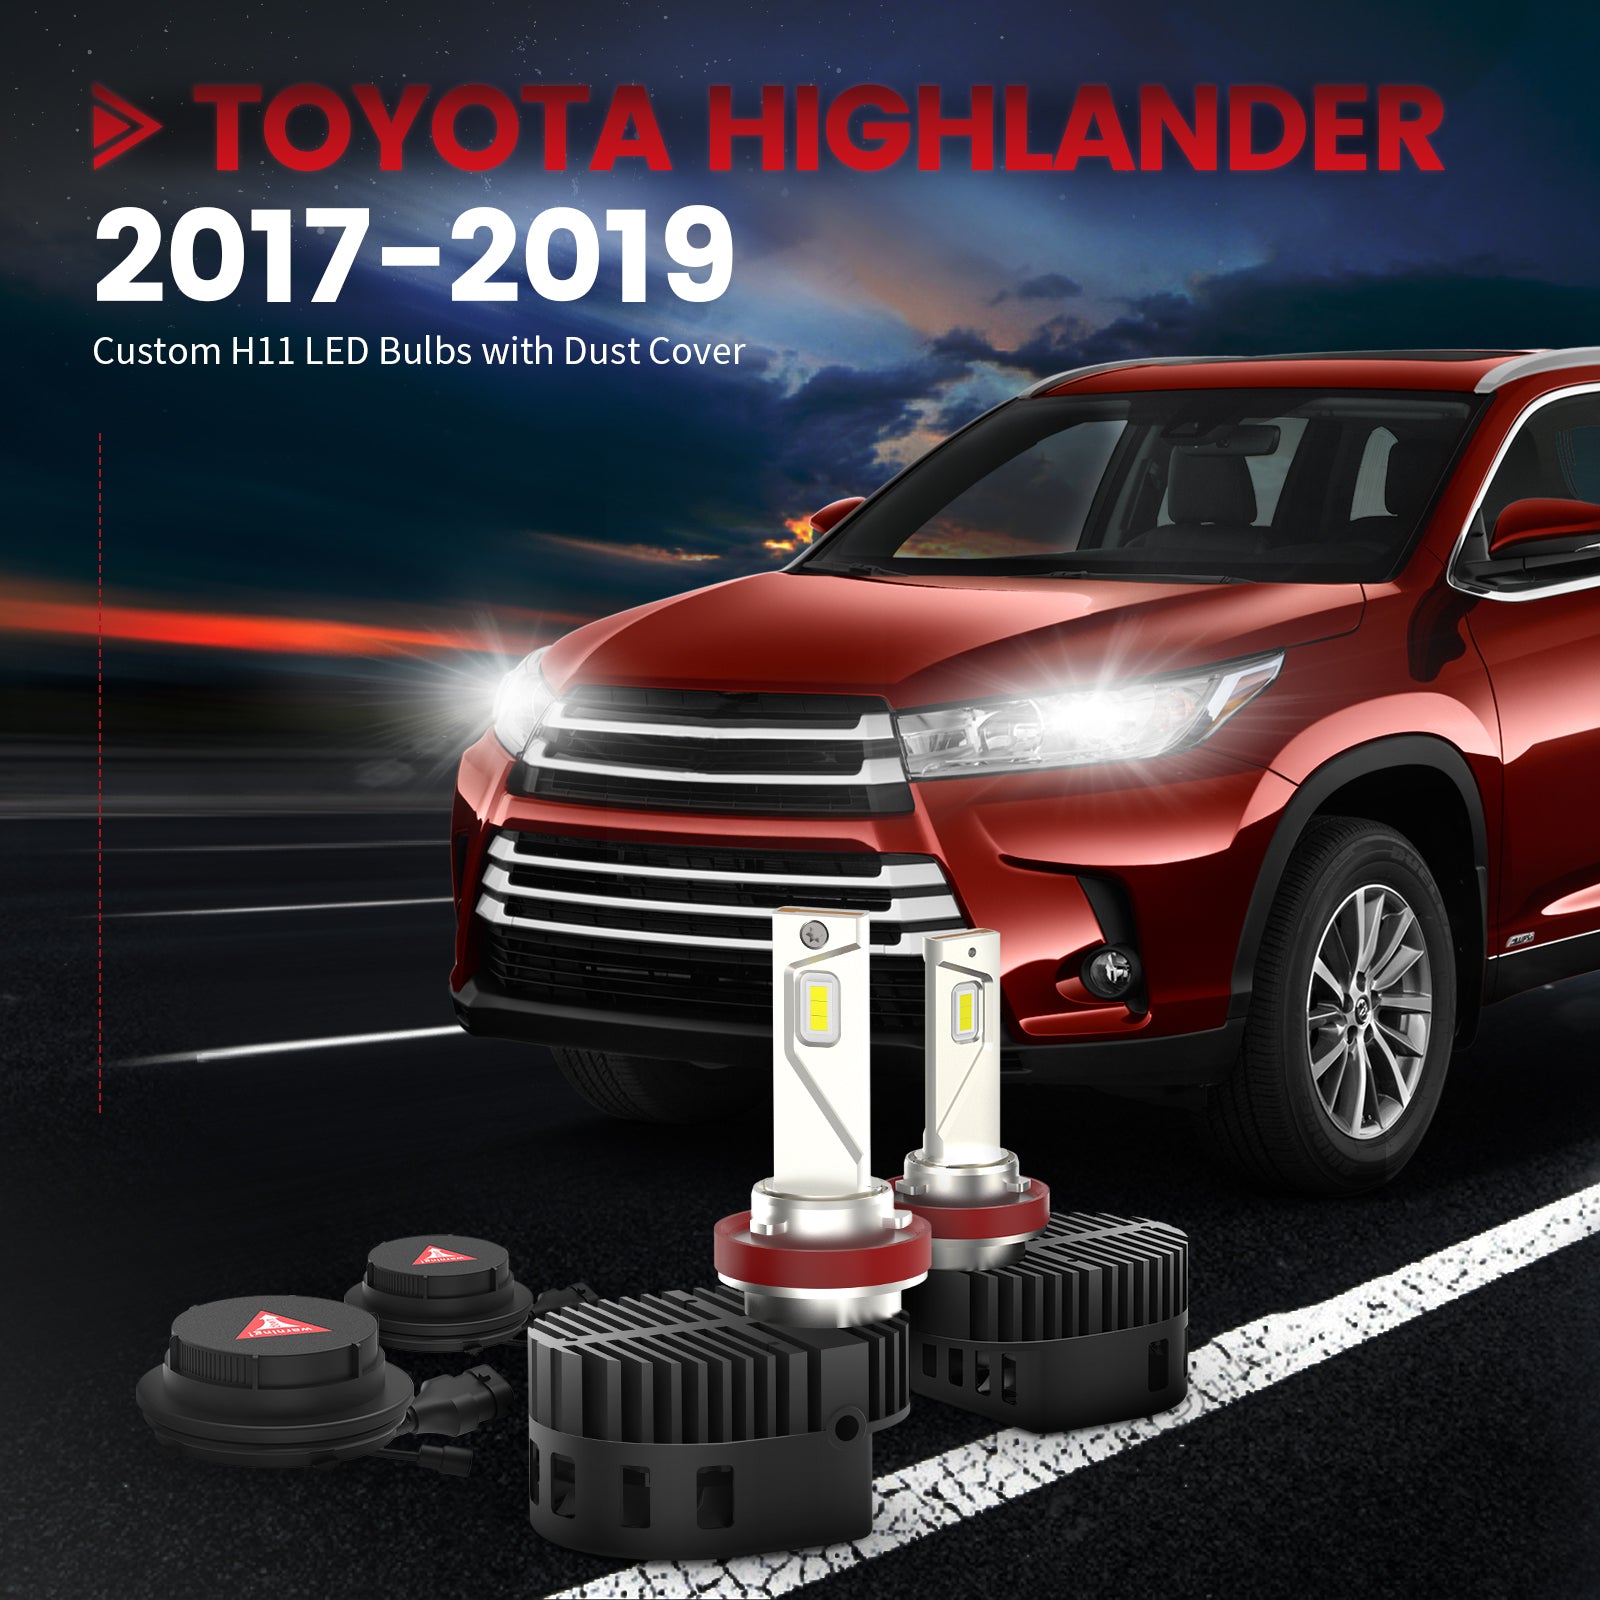 Best Toyota Highlander Accessories